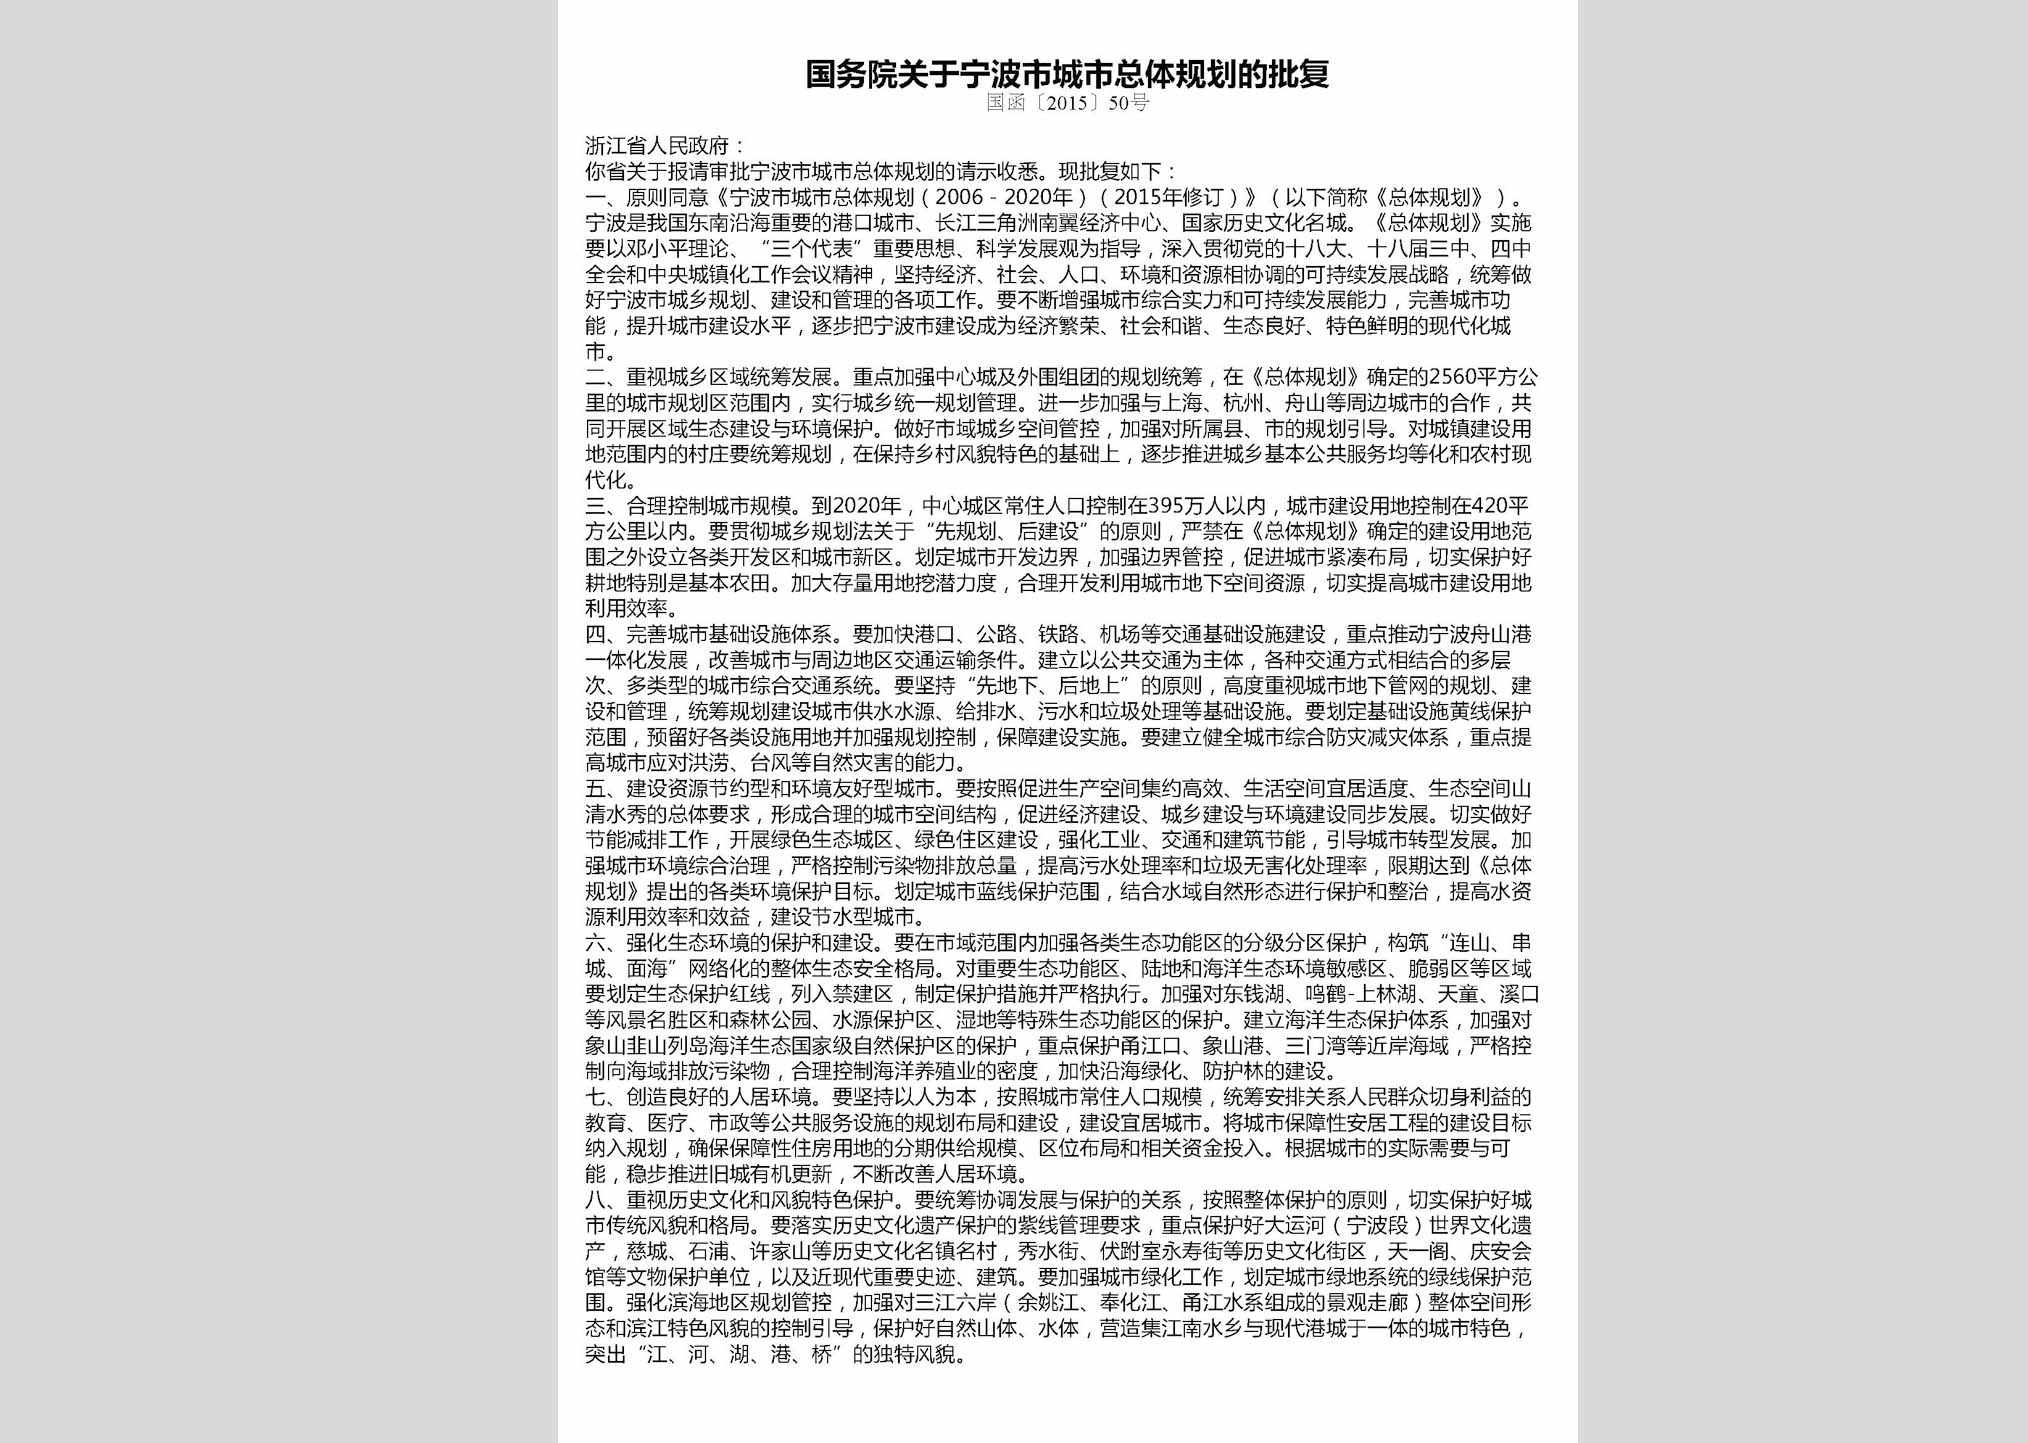 国函[2015]50号：国务院关于宁波市城市总体规划的批复